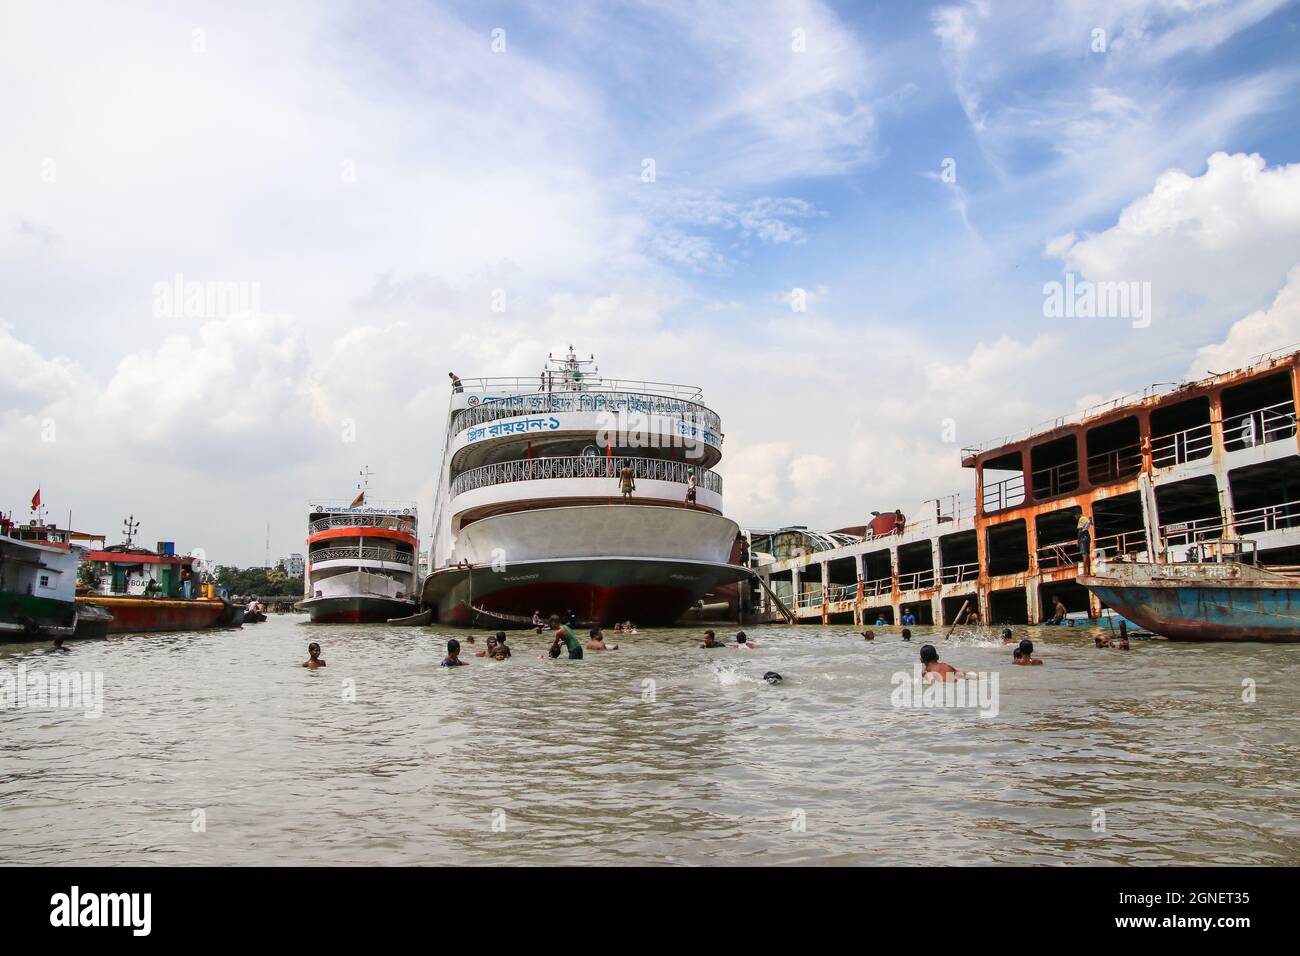 Buriganga river, Dhaka, Bangladesh : Lifestyle around the dockyard situated on the banks of Buriganga river Stock Photo